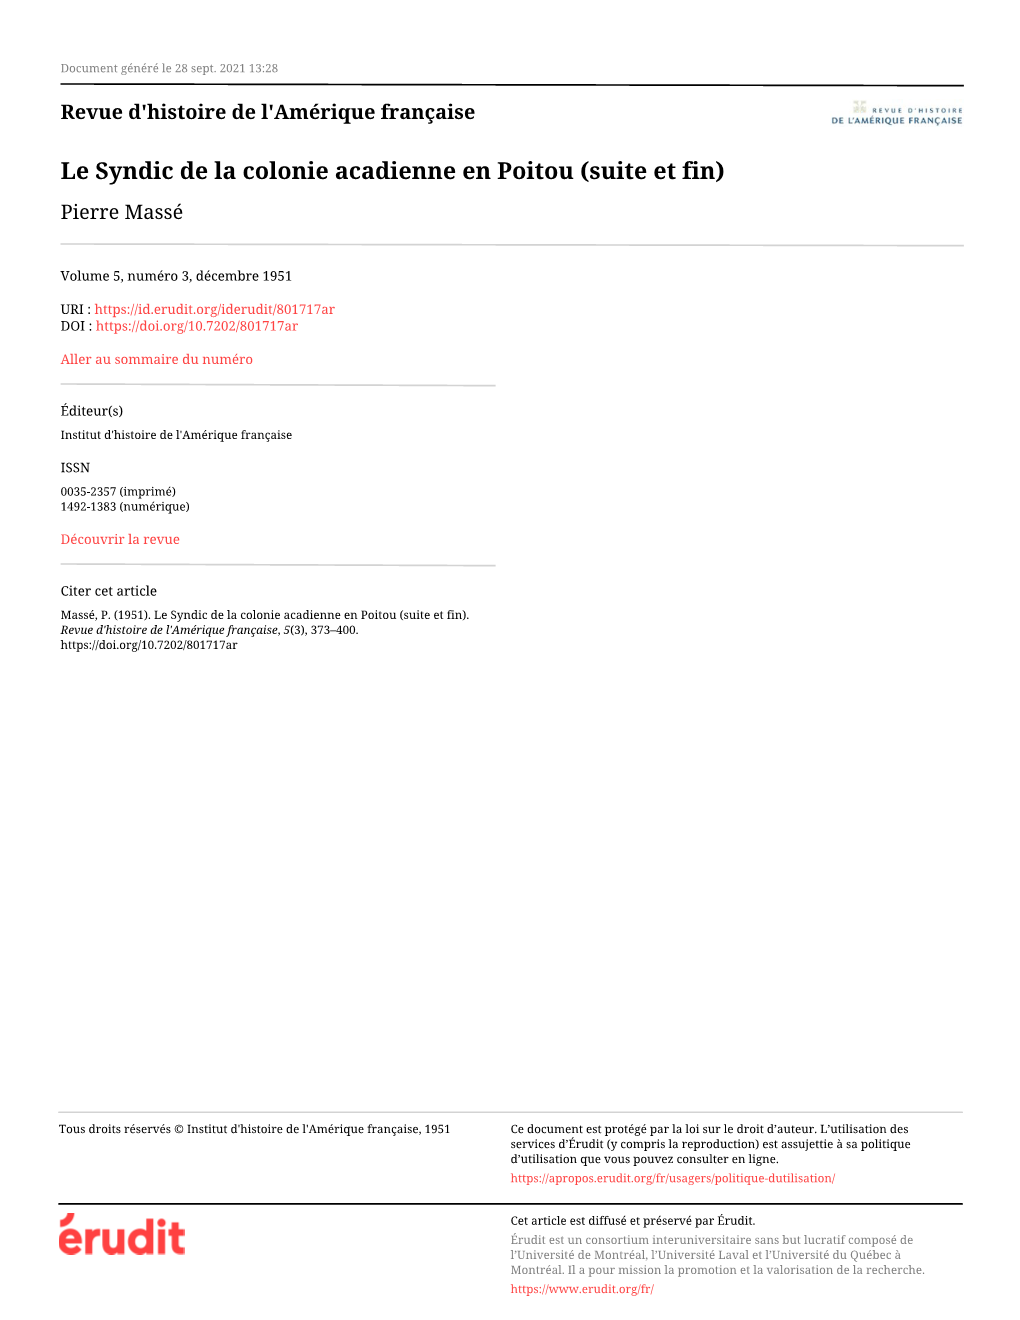 Le Syndic De La Colonie Acadienne En Poitou (Suite Et Fin) Pierre Massé